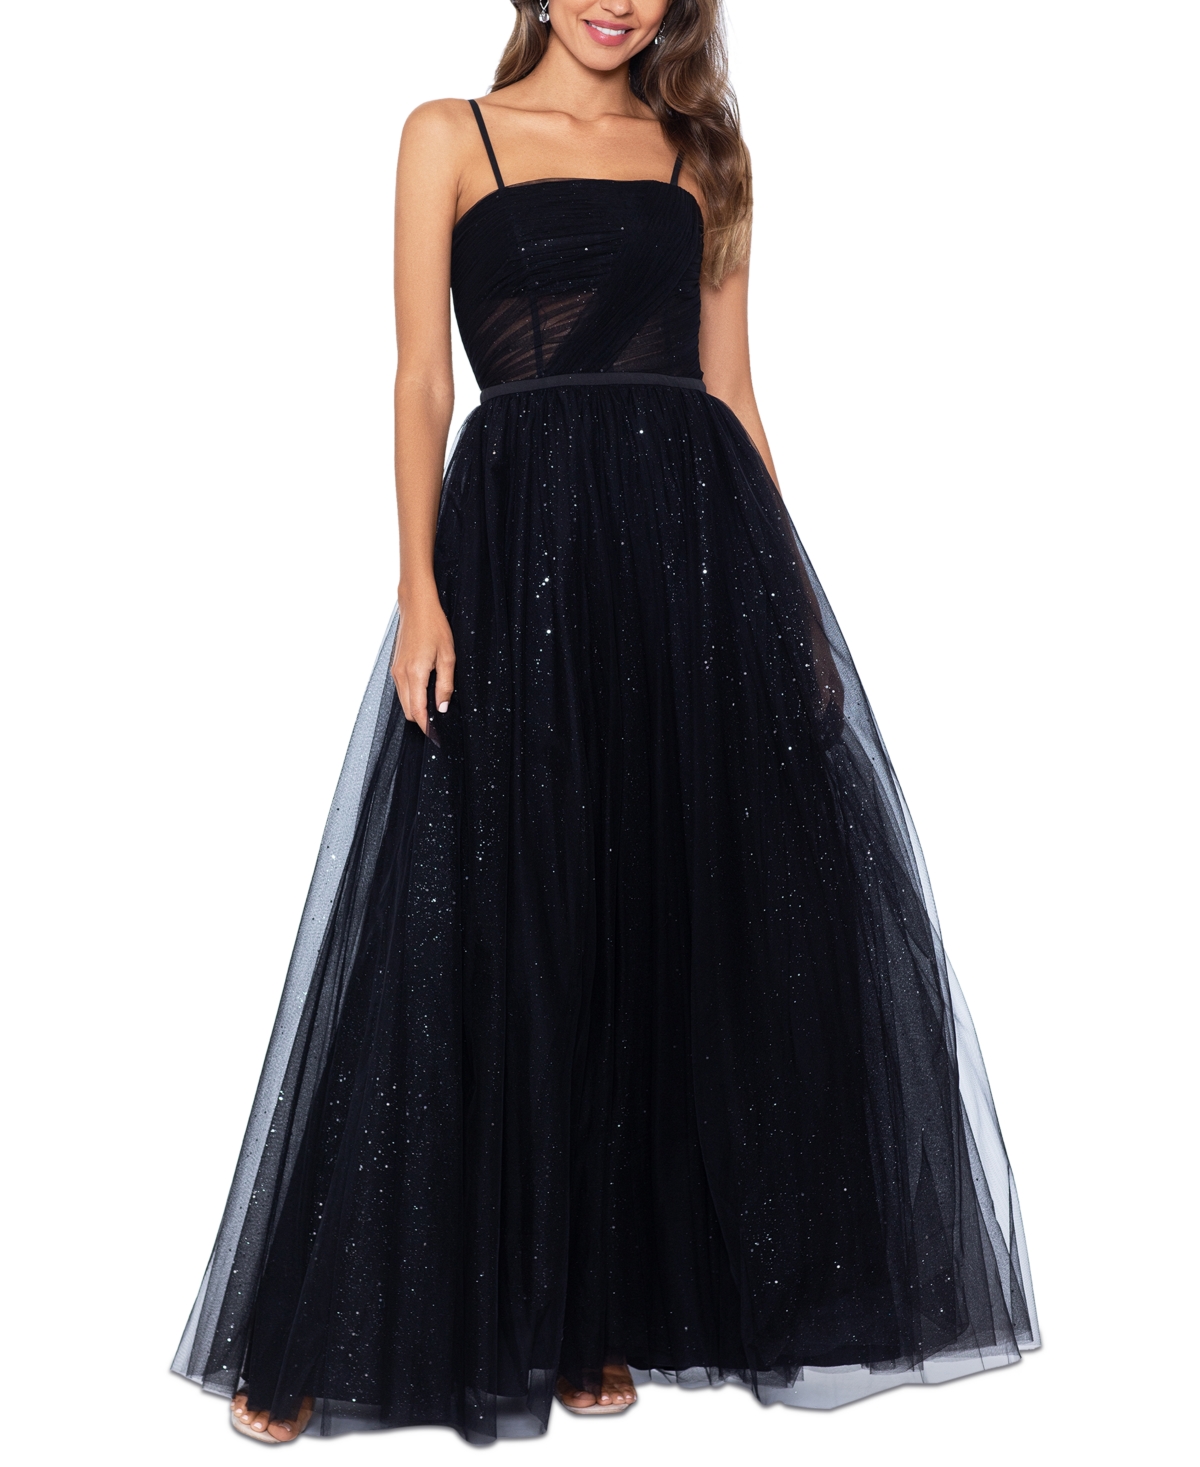 Women's Glittered Mesh Ball Gown - Black